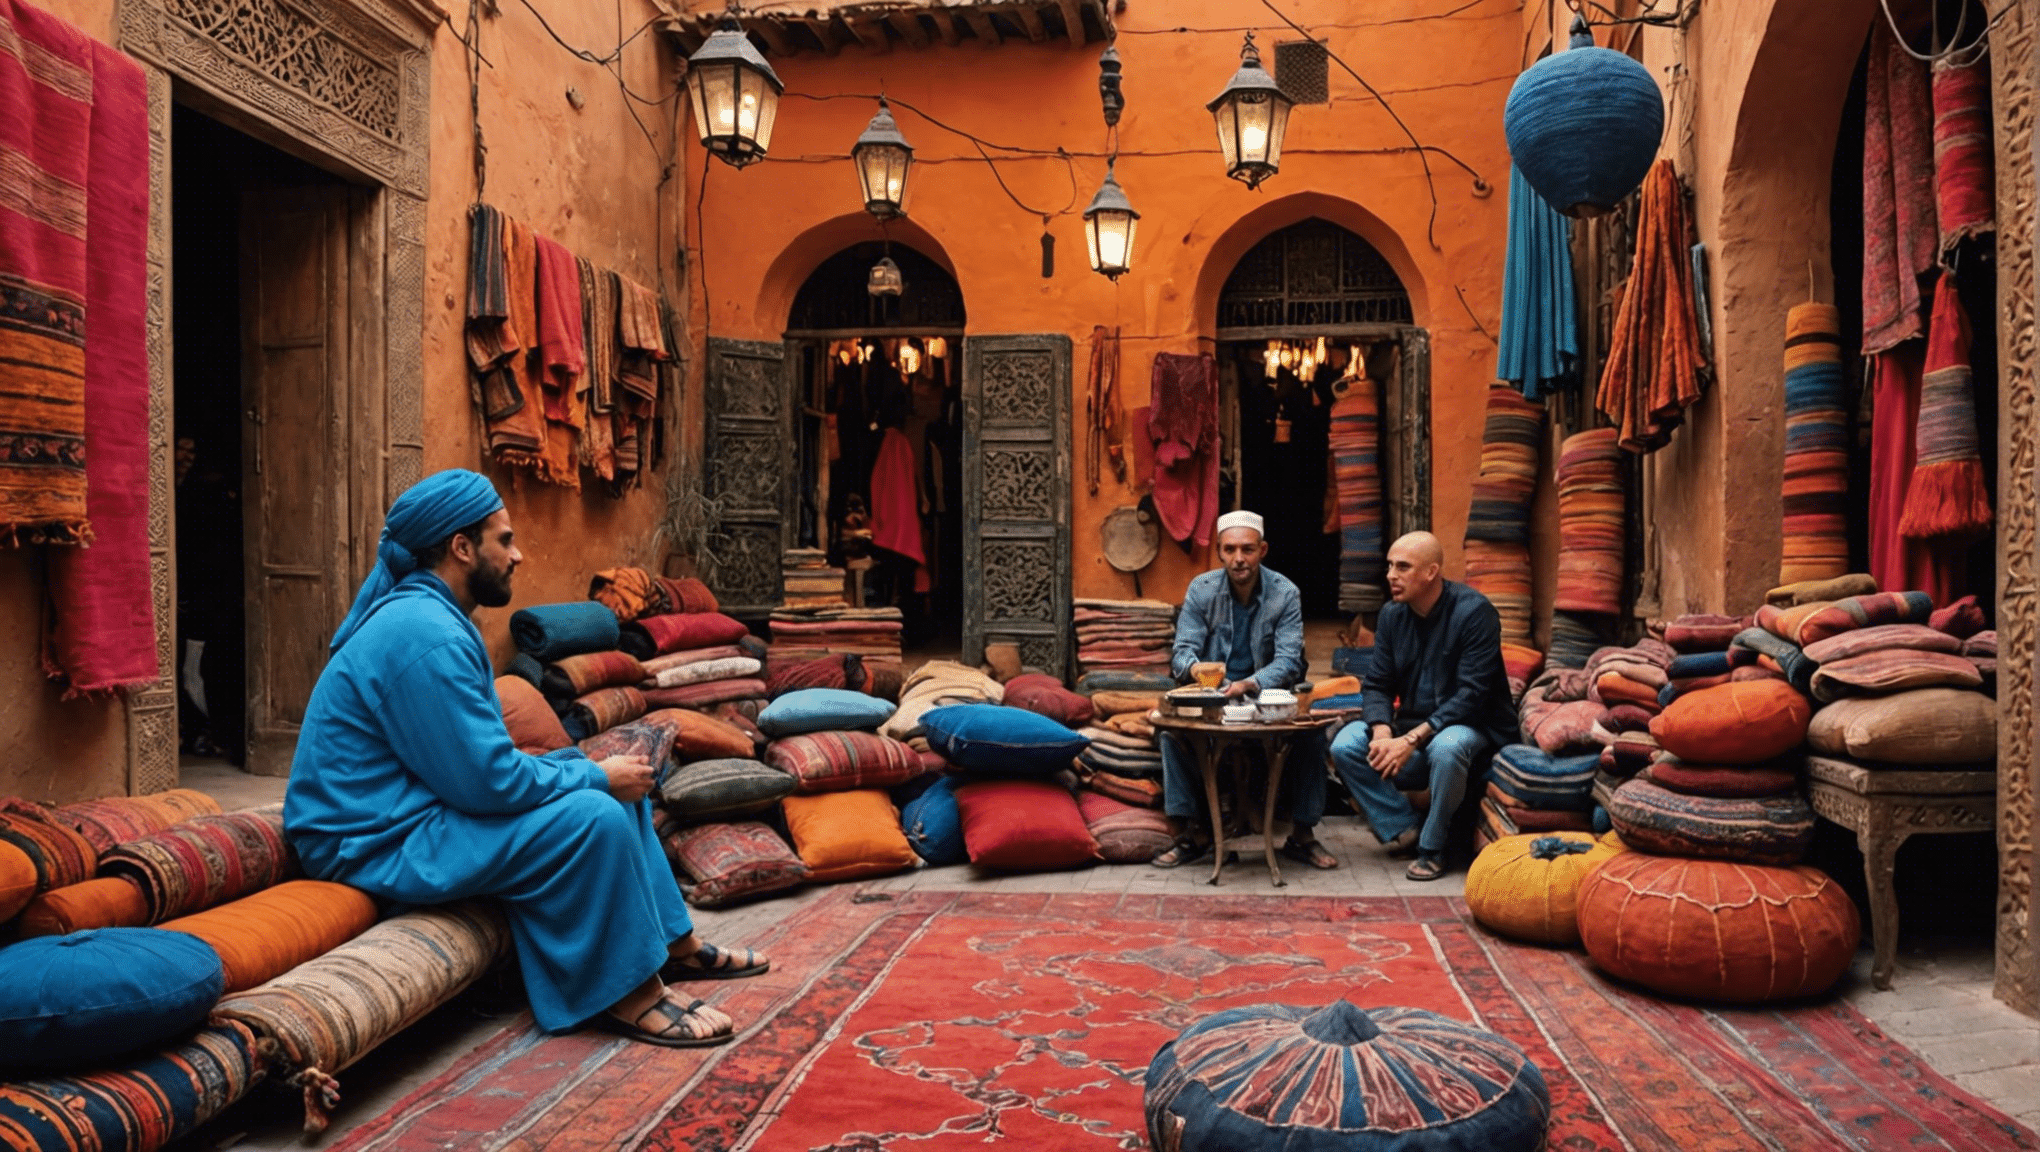 explorez la destination d'aventure ultime et découvrez les souks animés et les tapis exotiques d'une ville marocaine.